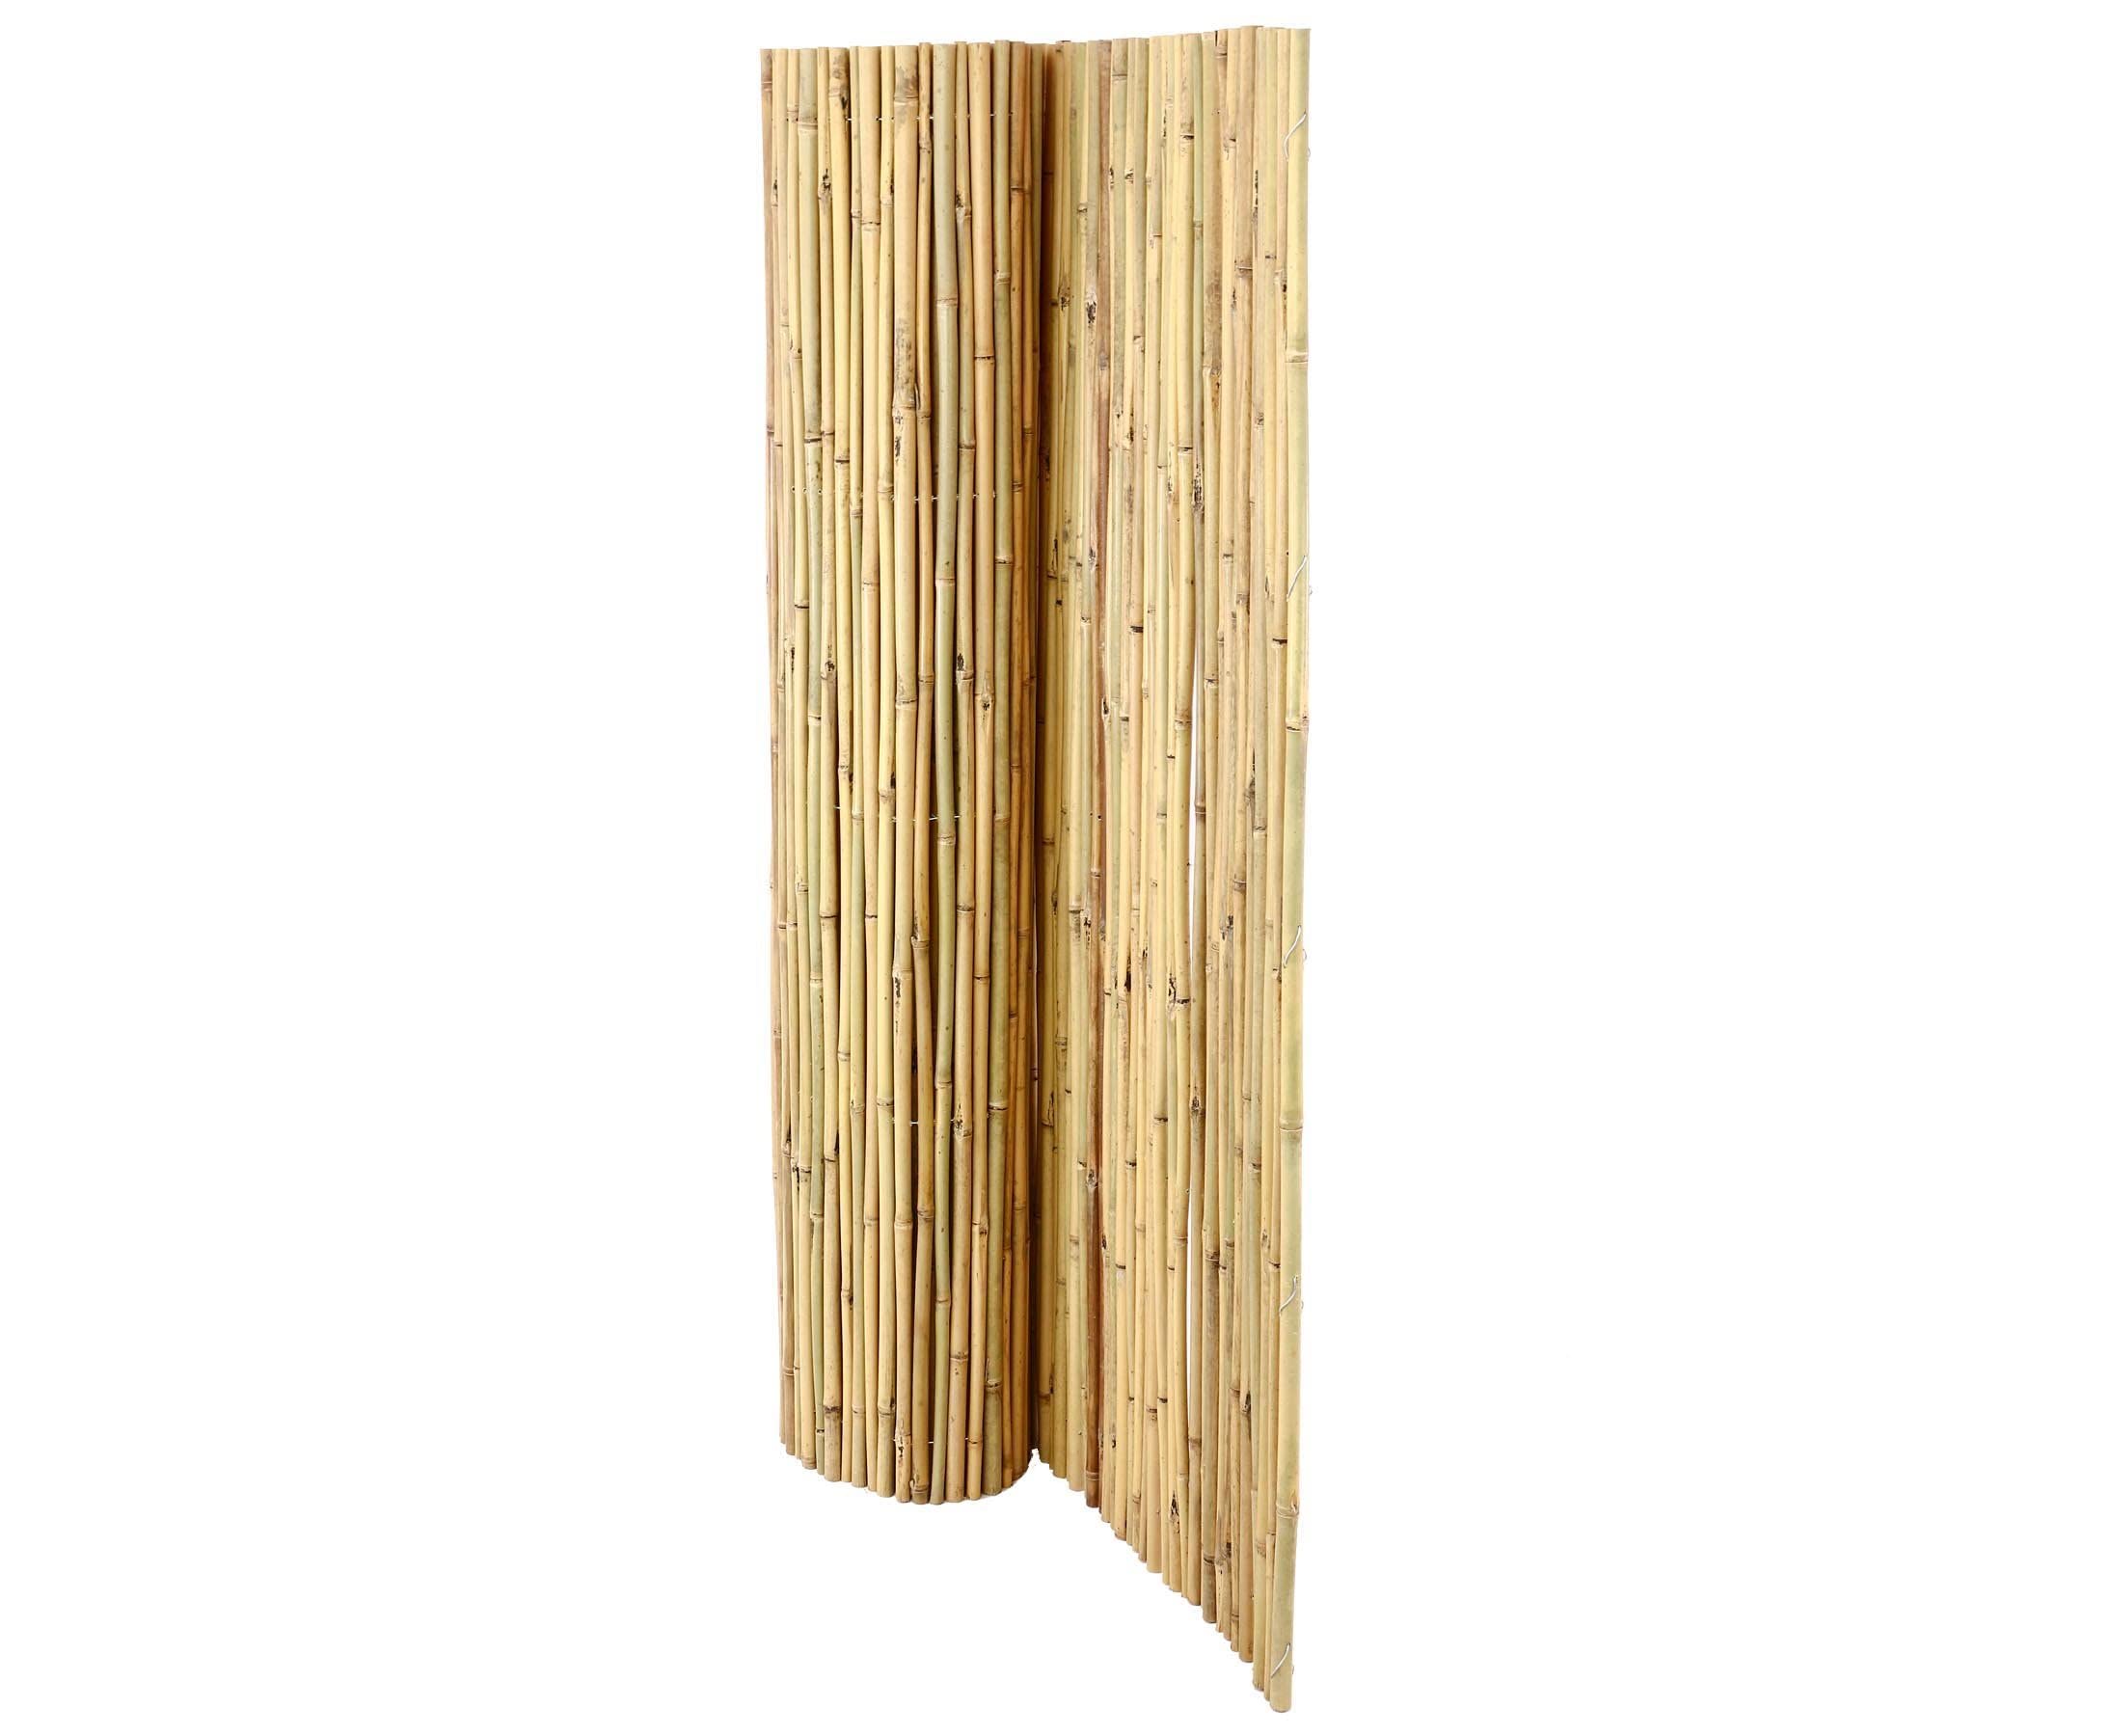 Bambusmatte Bali extrem stabil 150 x 300 cm aus Bambusrohren mit Draht durchbohrt und verbunden - Bambus Sichtschutzmatte 1,5m x 3m